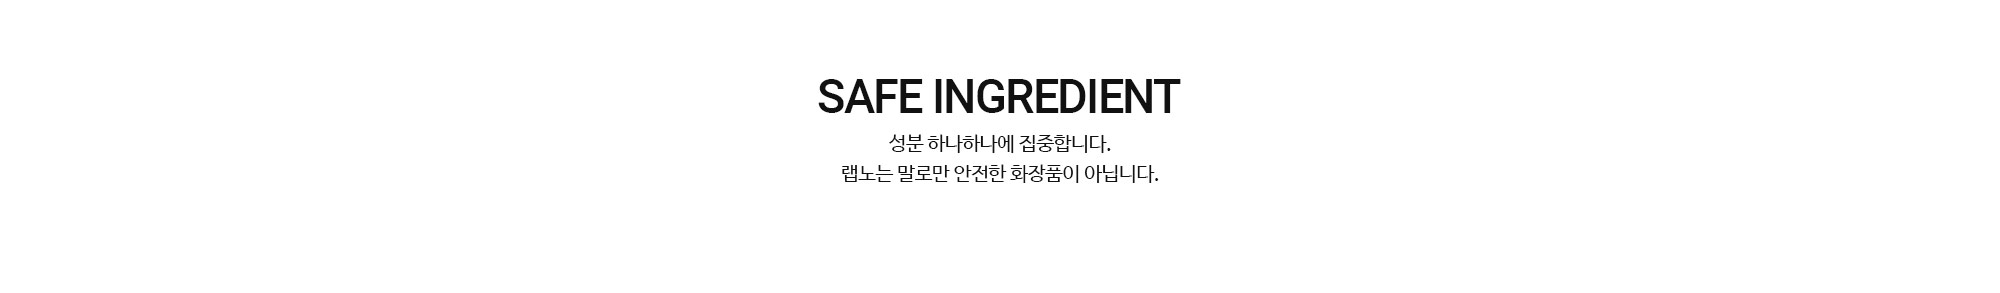 tit_safe_ingredient(1)_151042.jpg